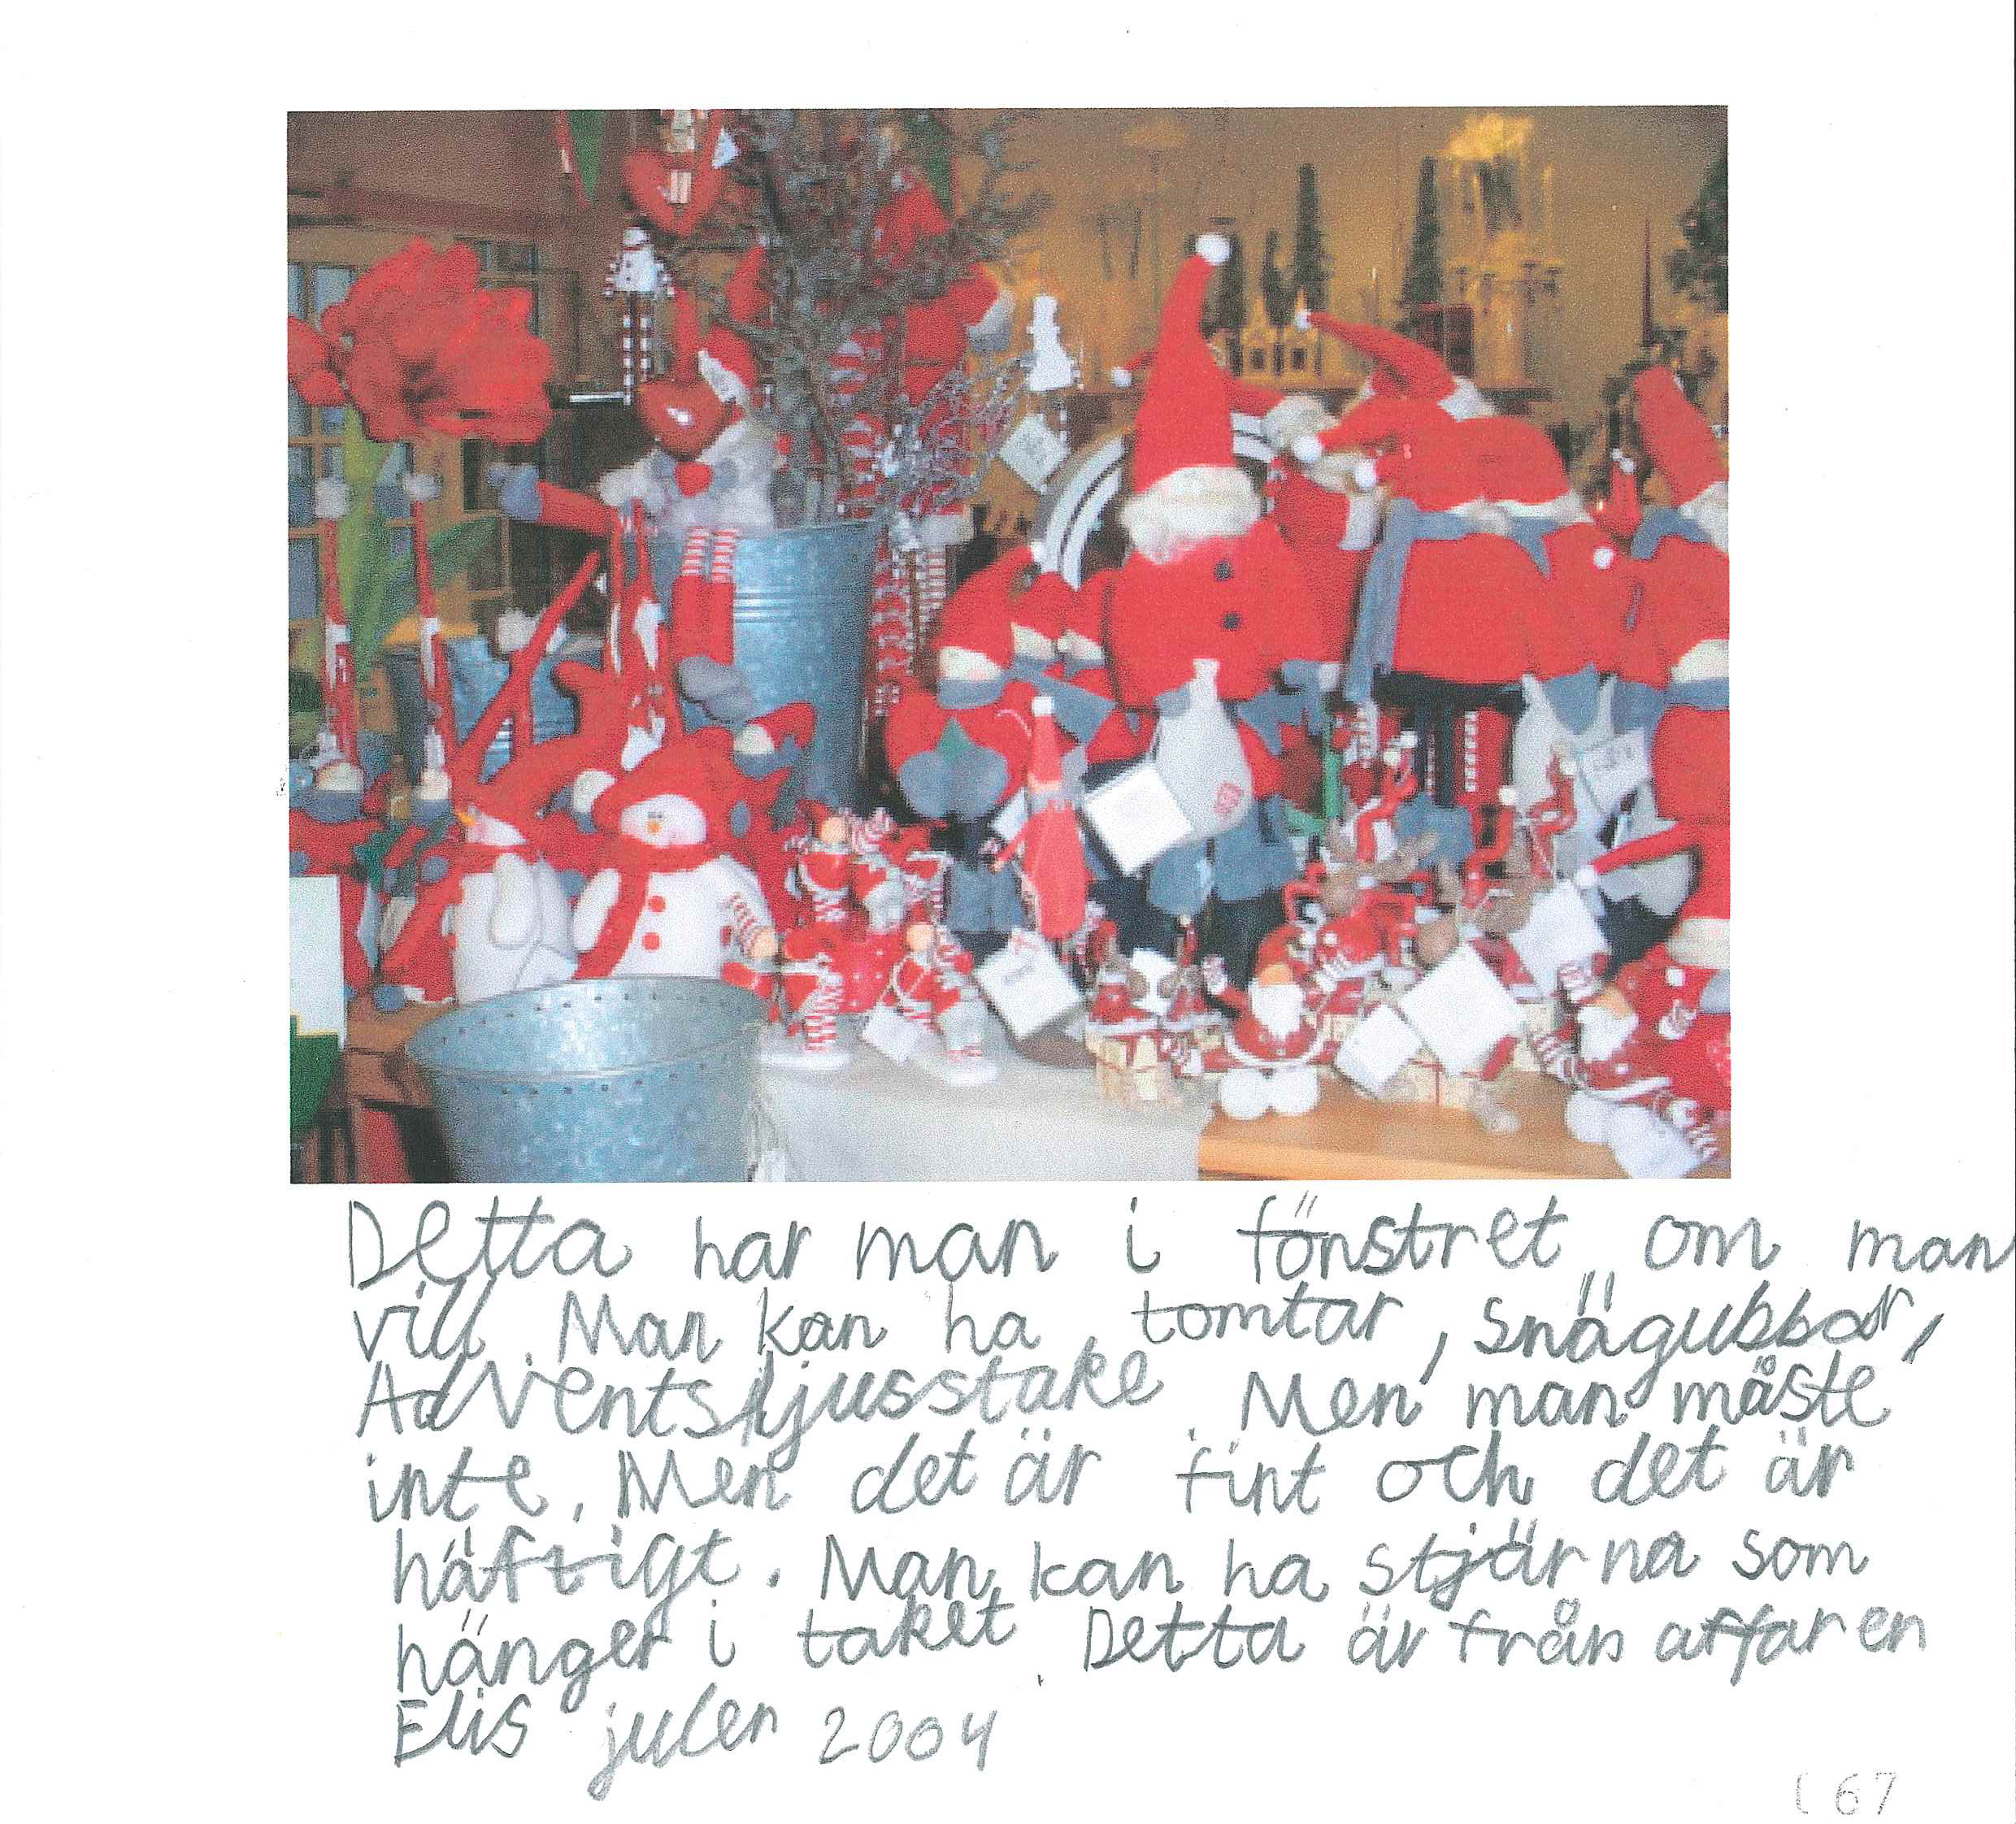 papper med ett fotografi på massa röda prydnadstomtar och under det en handskriven text.